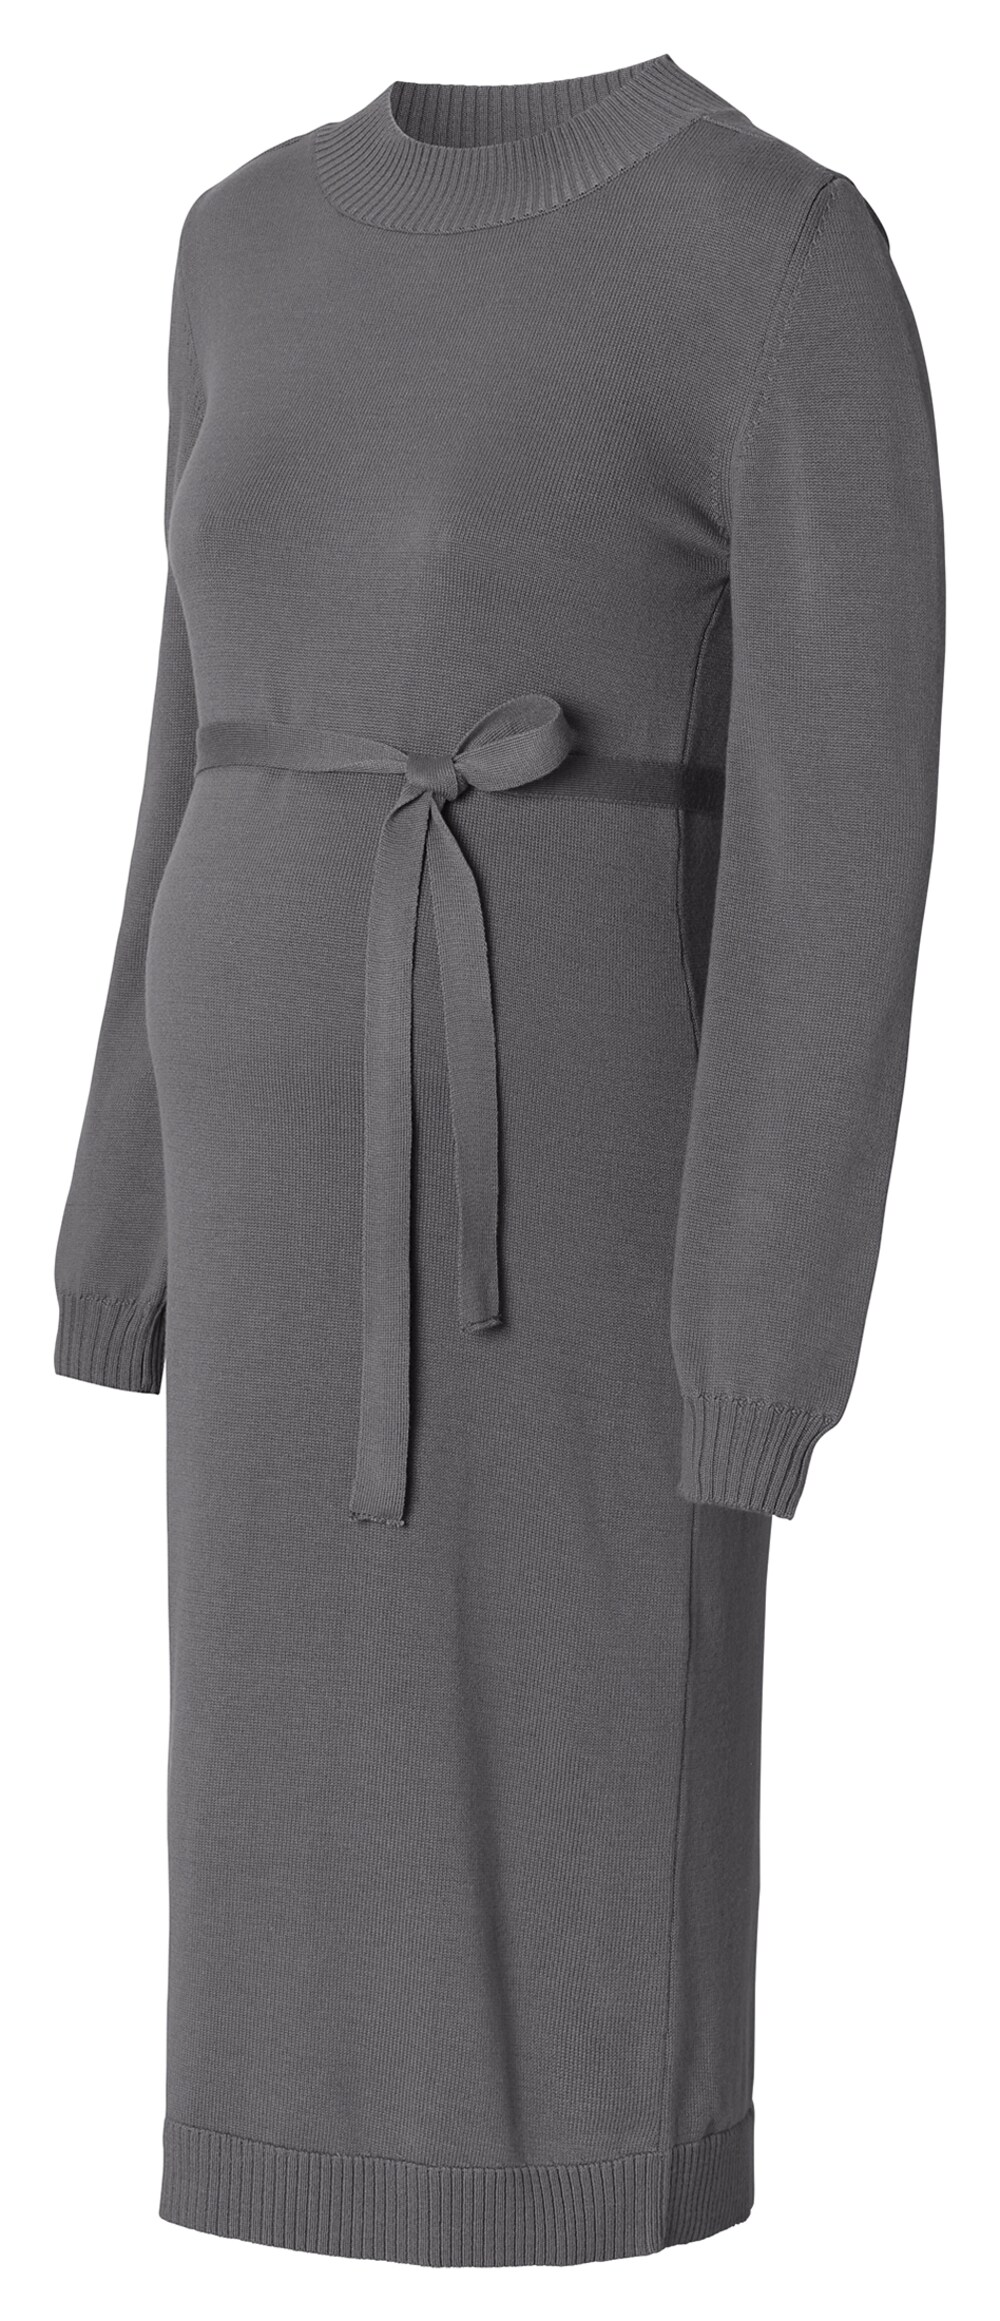 Вязанное платье Esprit, базальтовый серый вязанное платье esprit песок